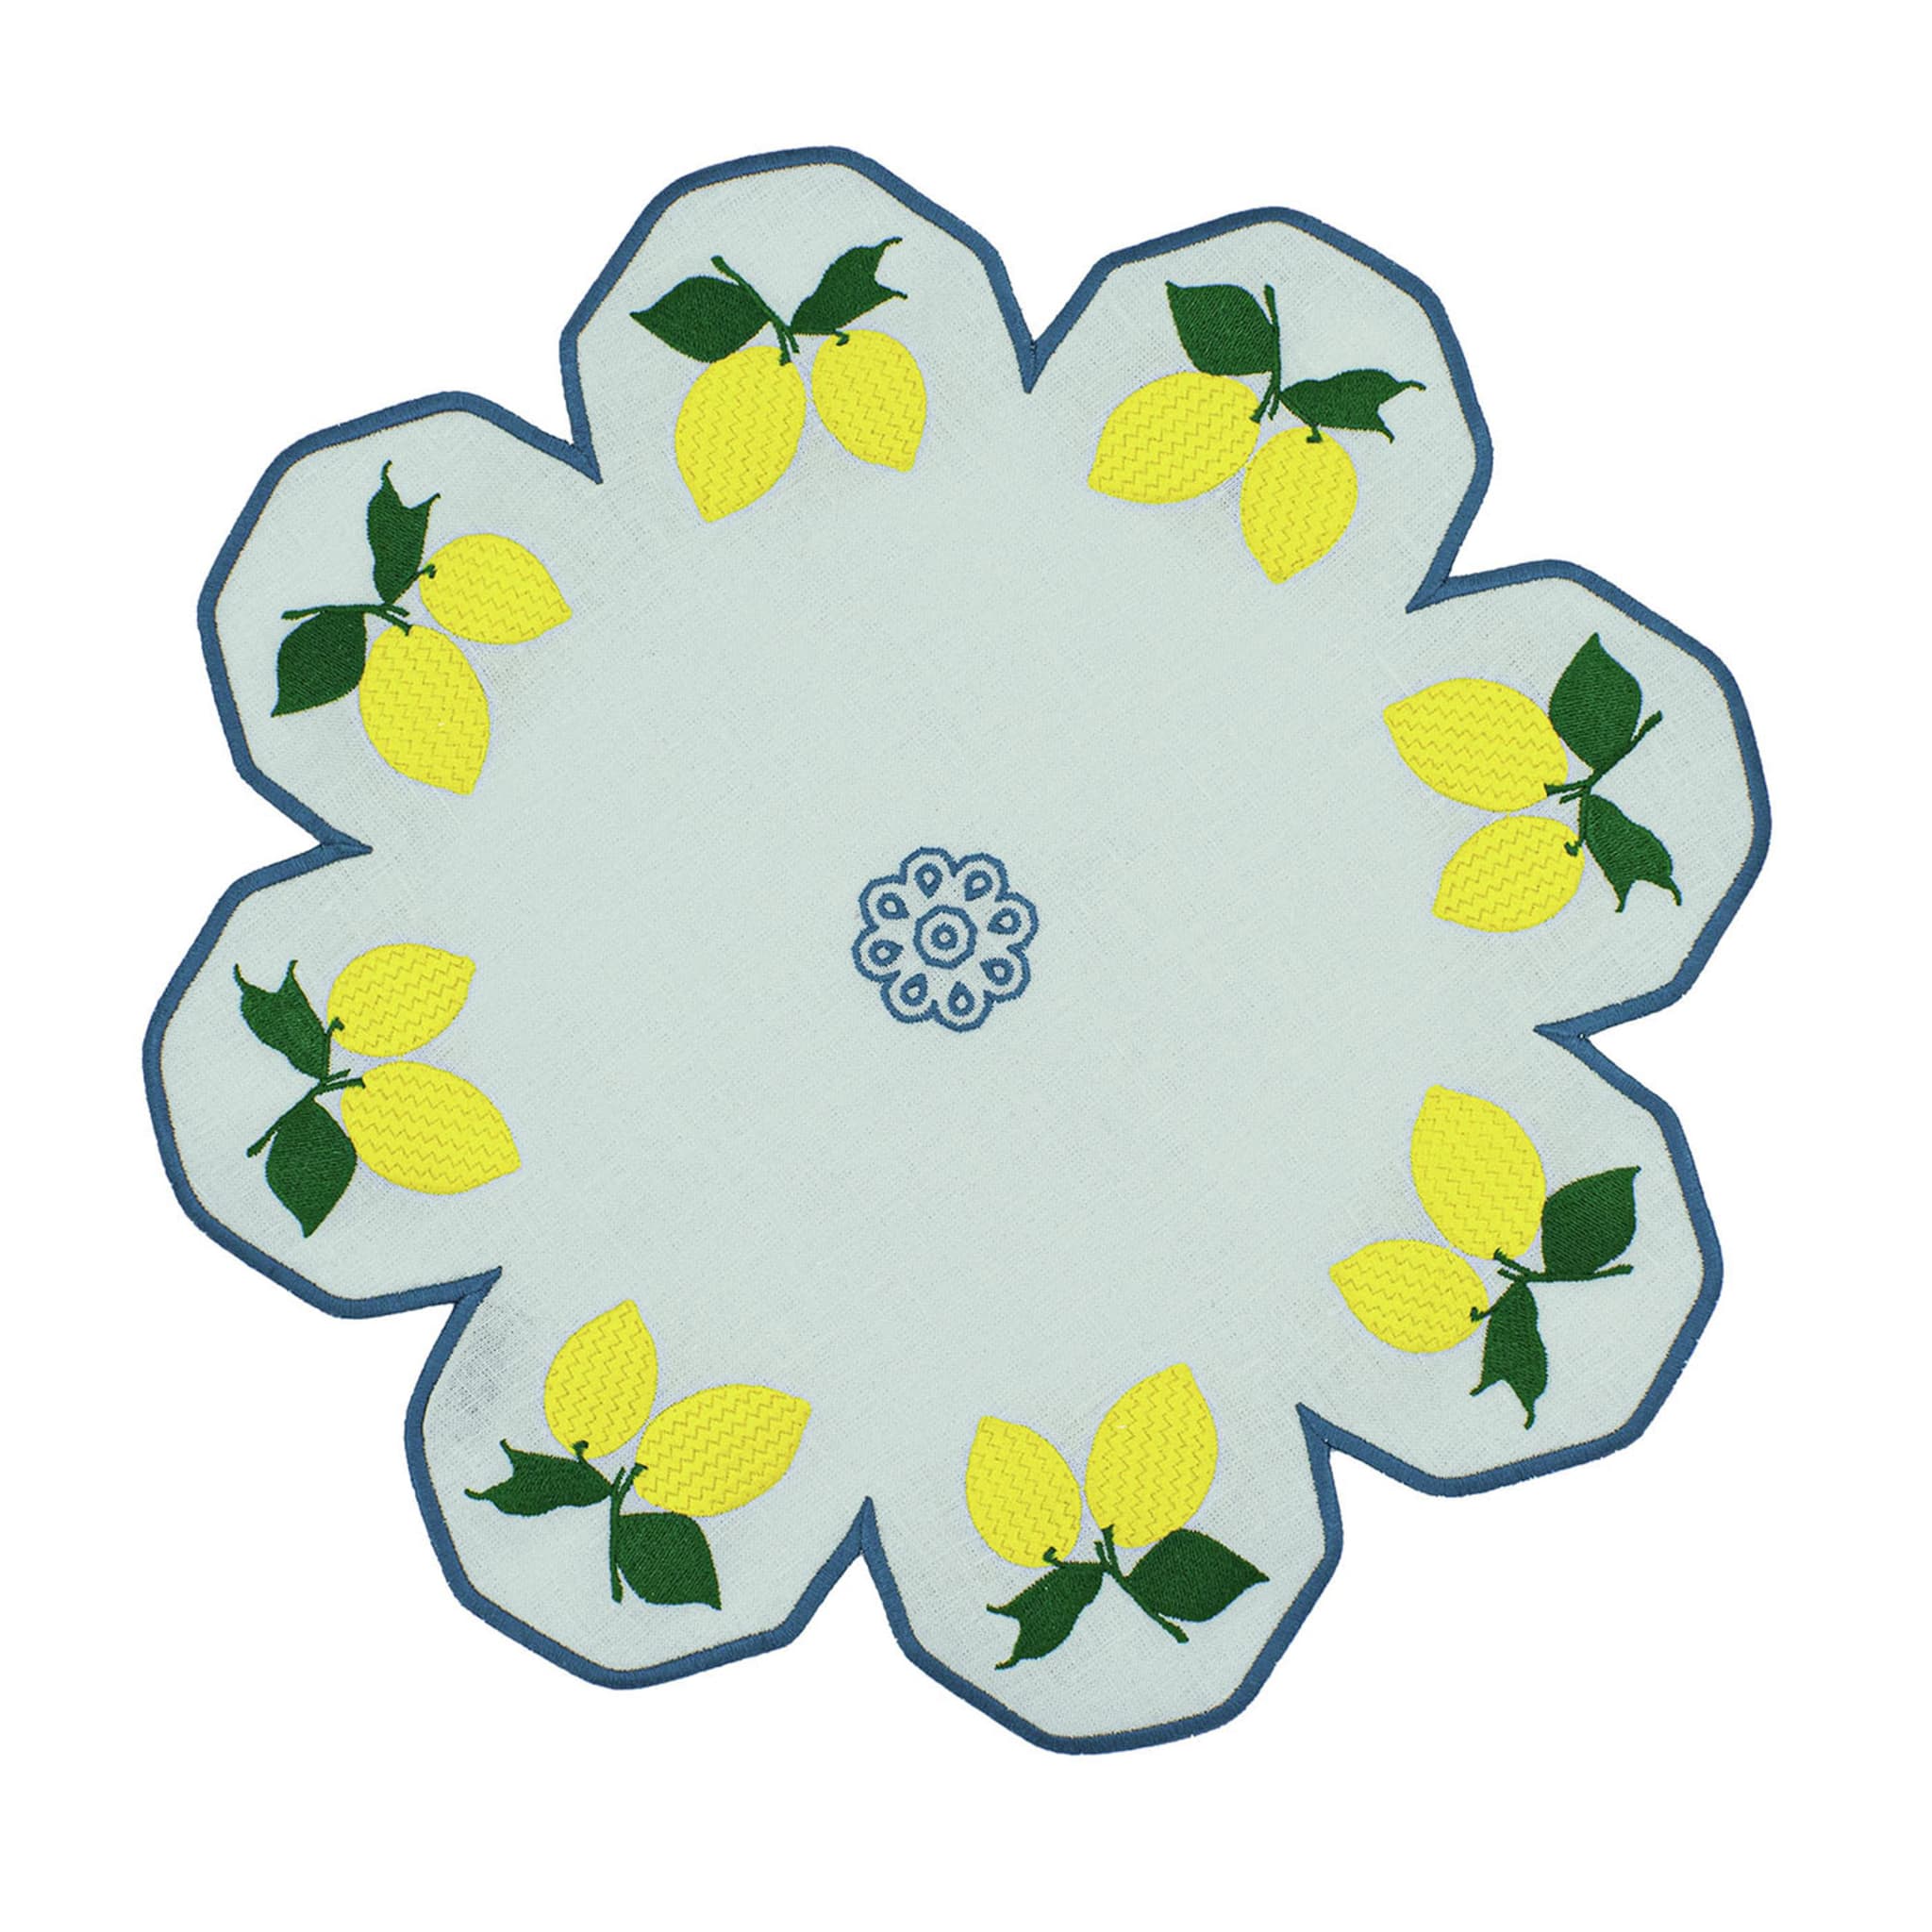 Limoni Multicolor Flower-Shaped Pale-Blue Service Placemat - Main view